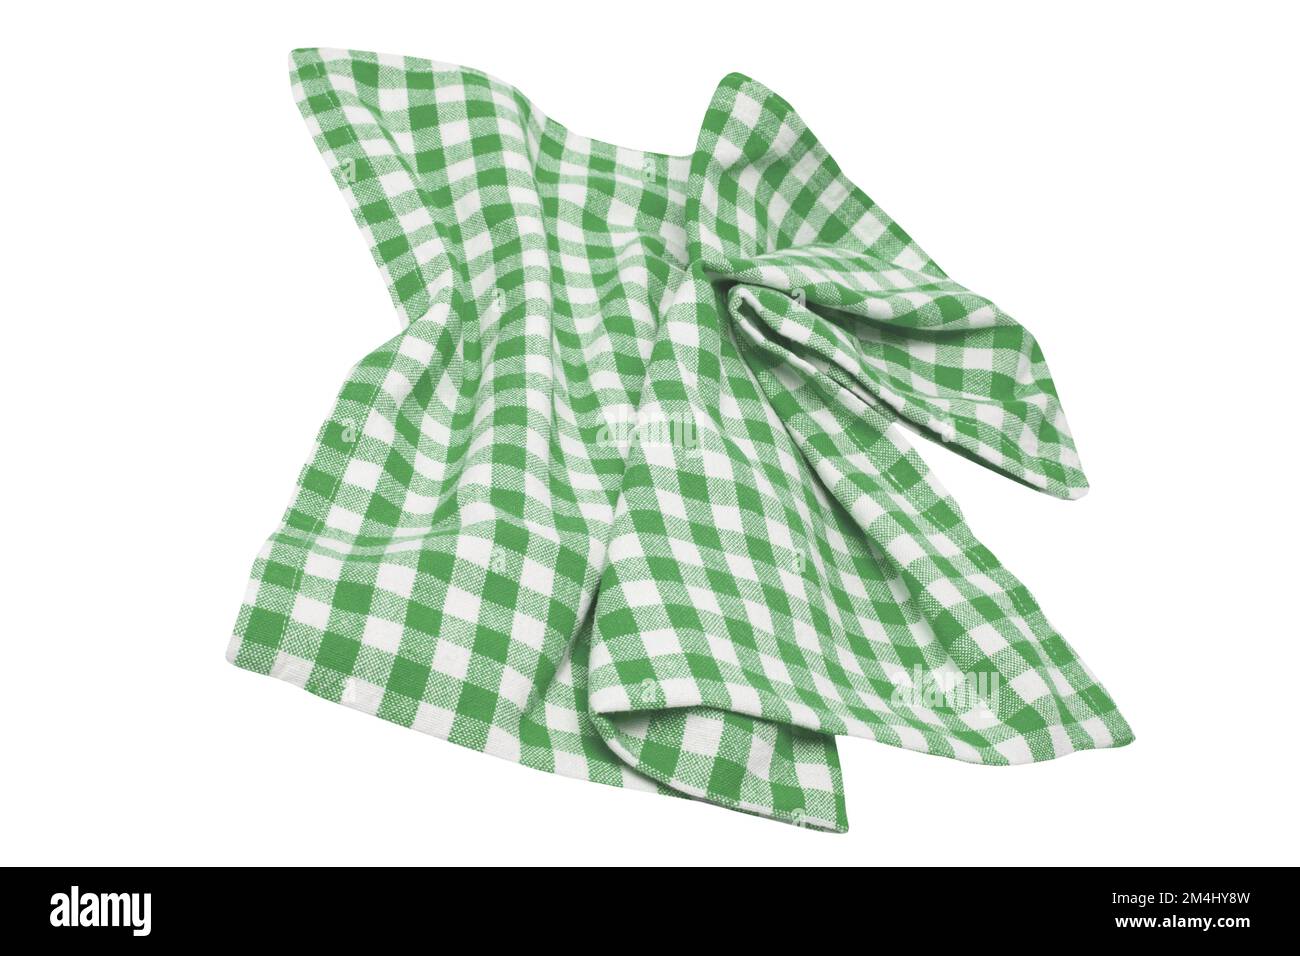 Nahaufnahme einer grün-weiß karierten Serviette oder Tischdecke, isoliert auf weißem Hintergrund. Küchenzubehör. Beschneidungspfad. Stockfoto